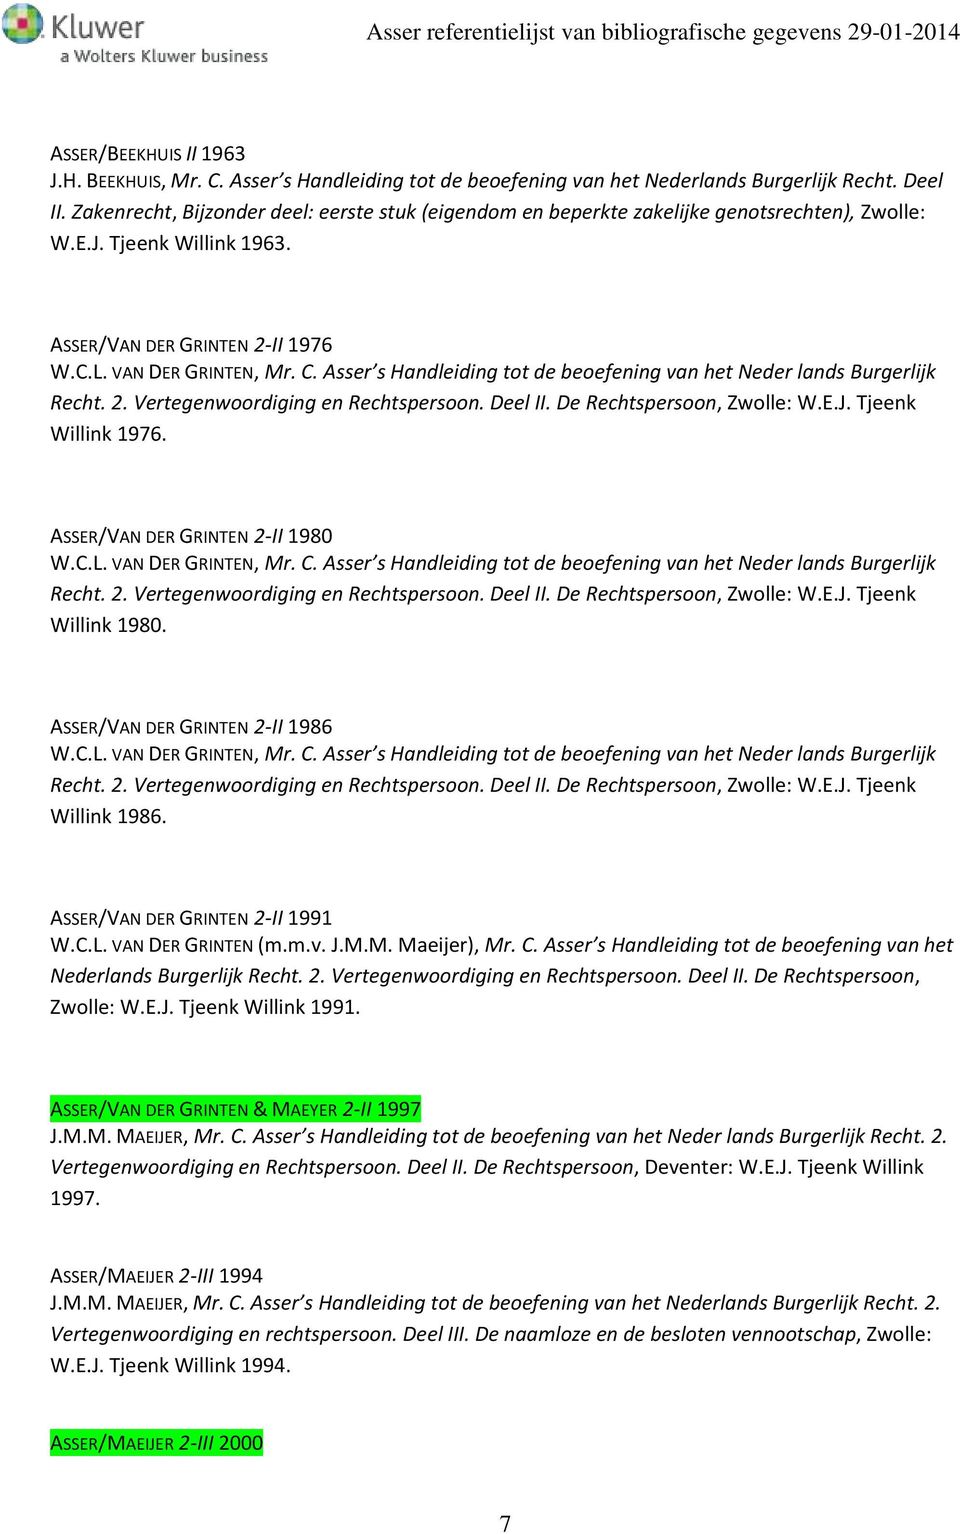 Asser s Handleiding tot de beoefening van het Neder lands Burgerlijk Recht. 2. Vertegenwoordiging en Rechtspersoon. Deel II. De Rechtspersoon, Zwolle: W.E.J. Tjeenk Willink 1976.